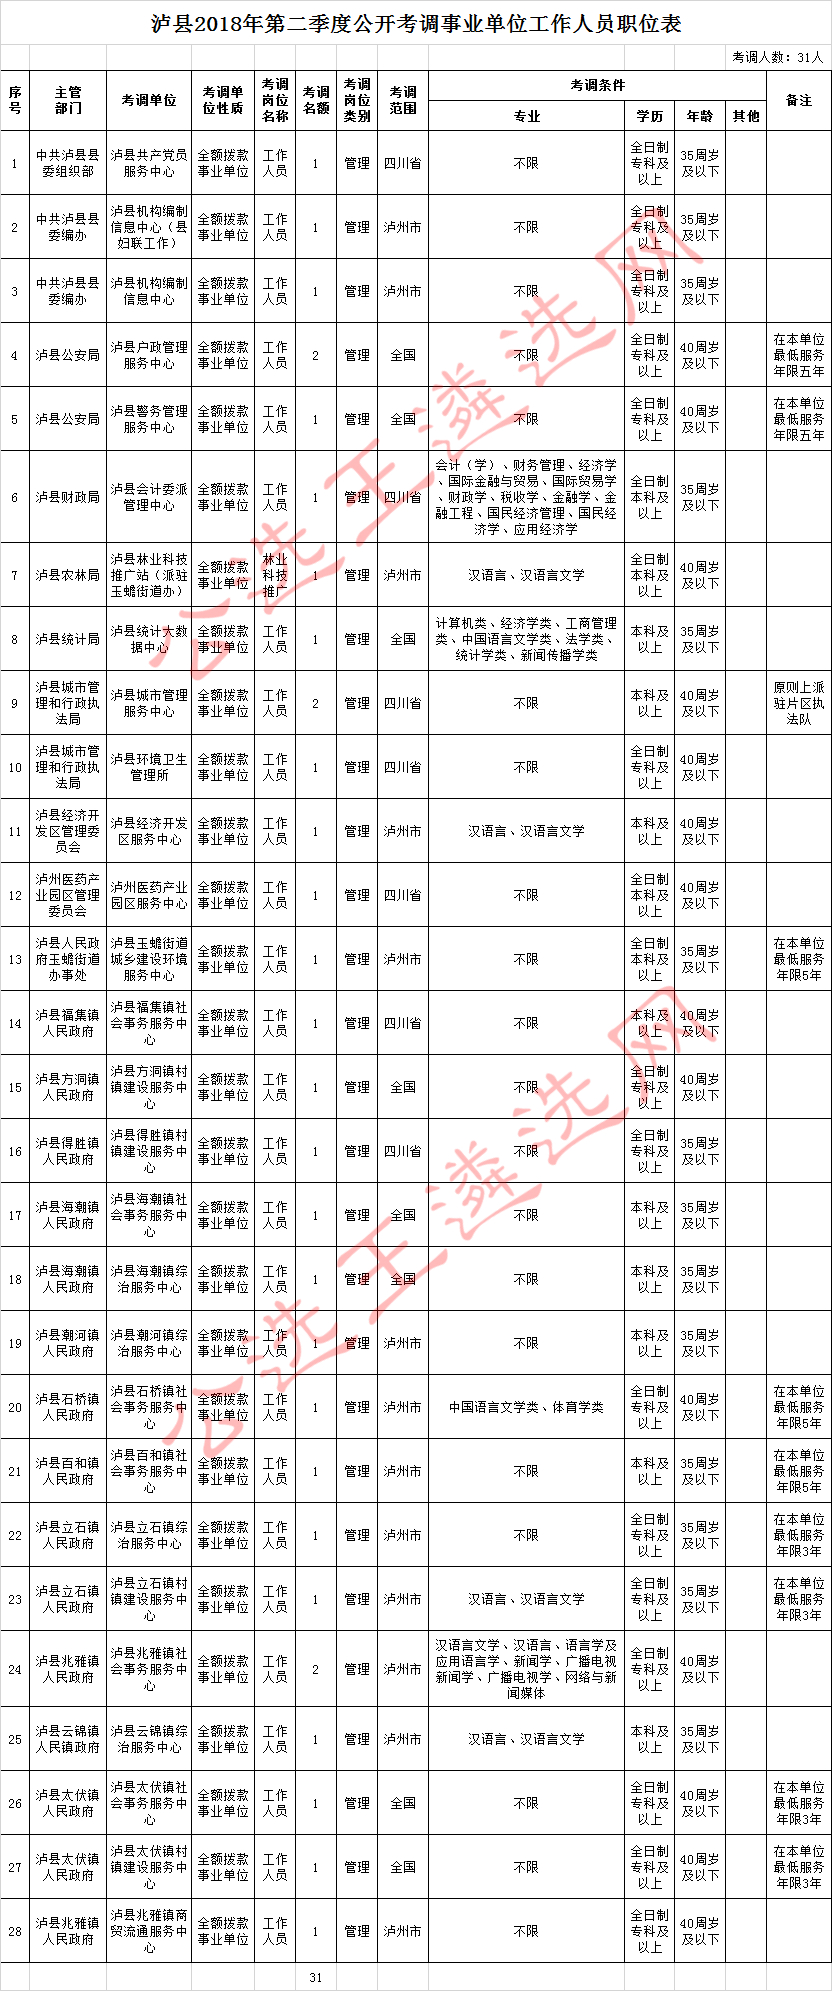 泸县2018年第二季度公开考调事业单位工作人员职位表.jpg